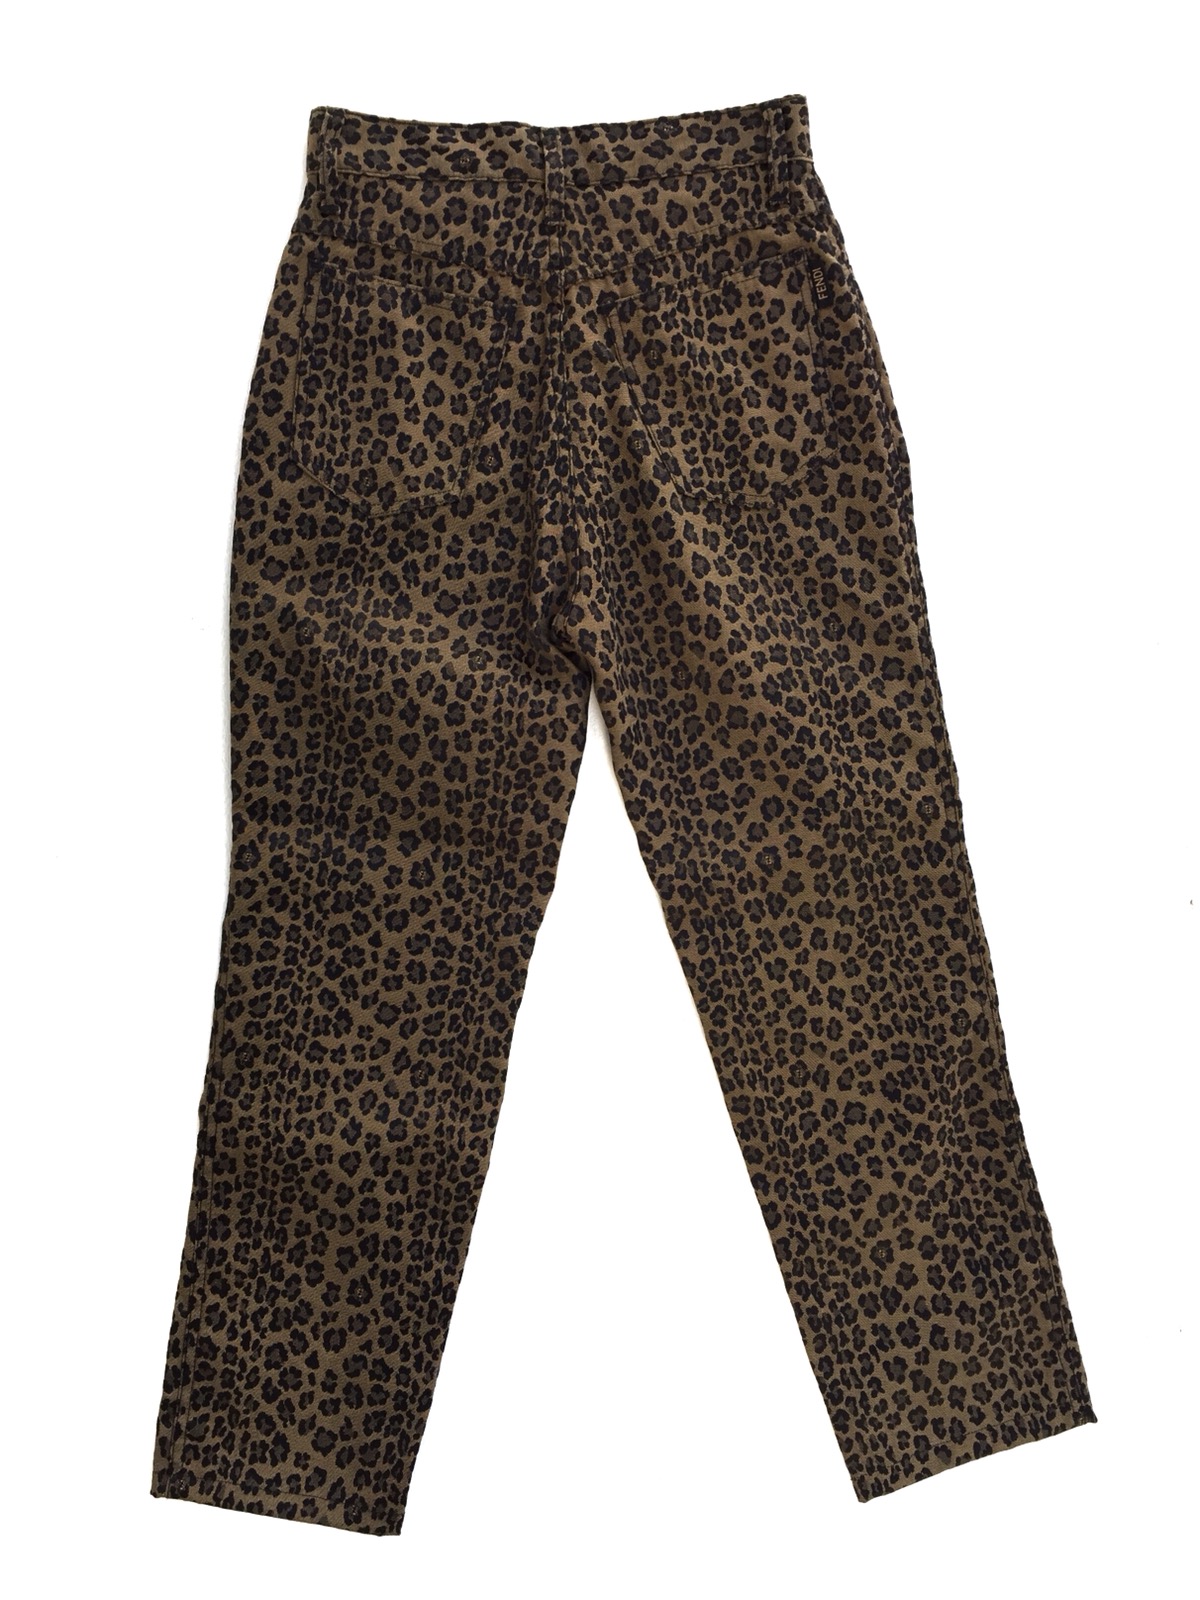 Vintage Authentic Fendi Leopard Pants - 2